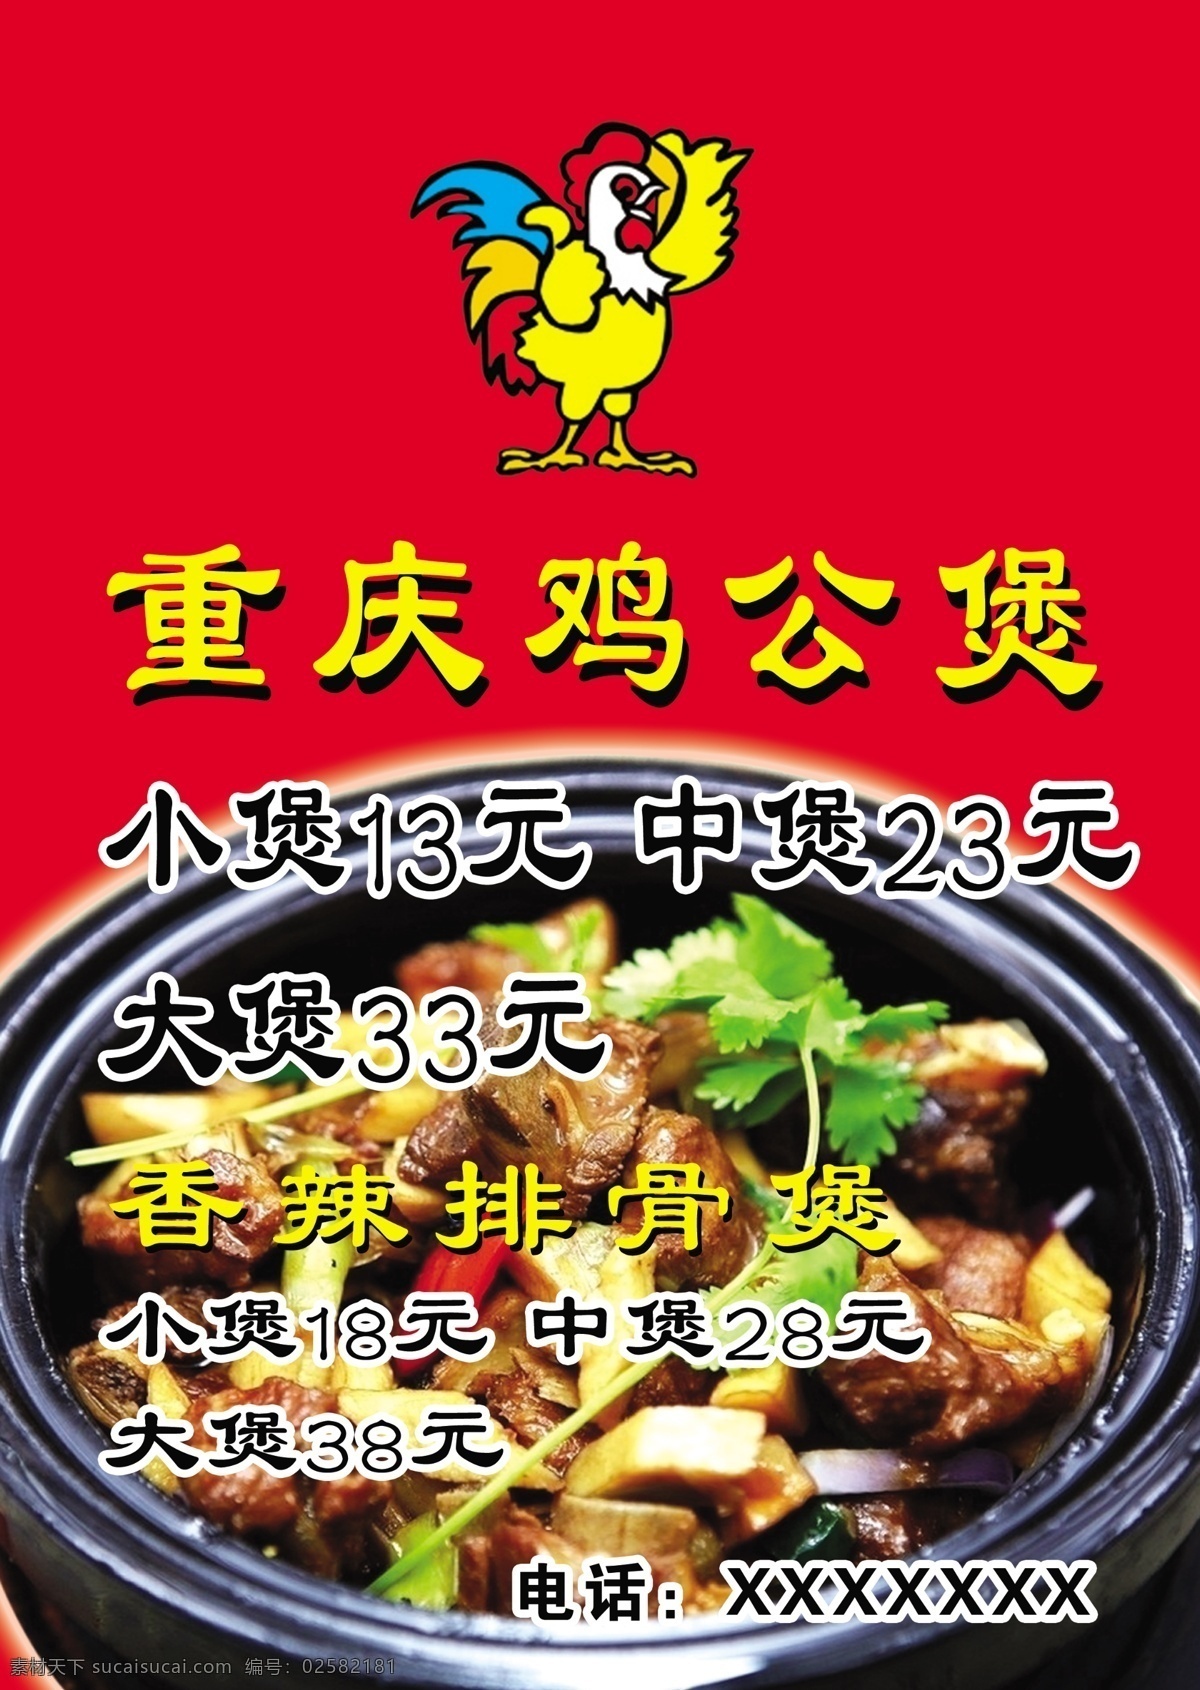 重庆鸡公煲 菜单图片 菜单 涮品 鱼丸类 蔬菜 锅仔